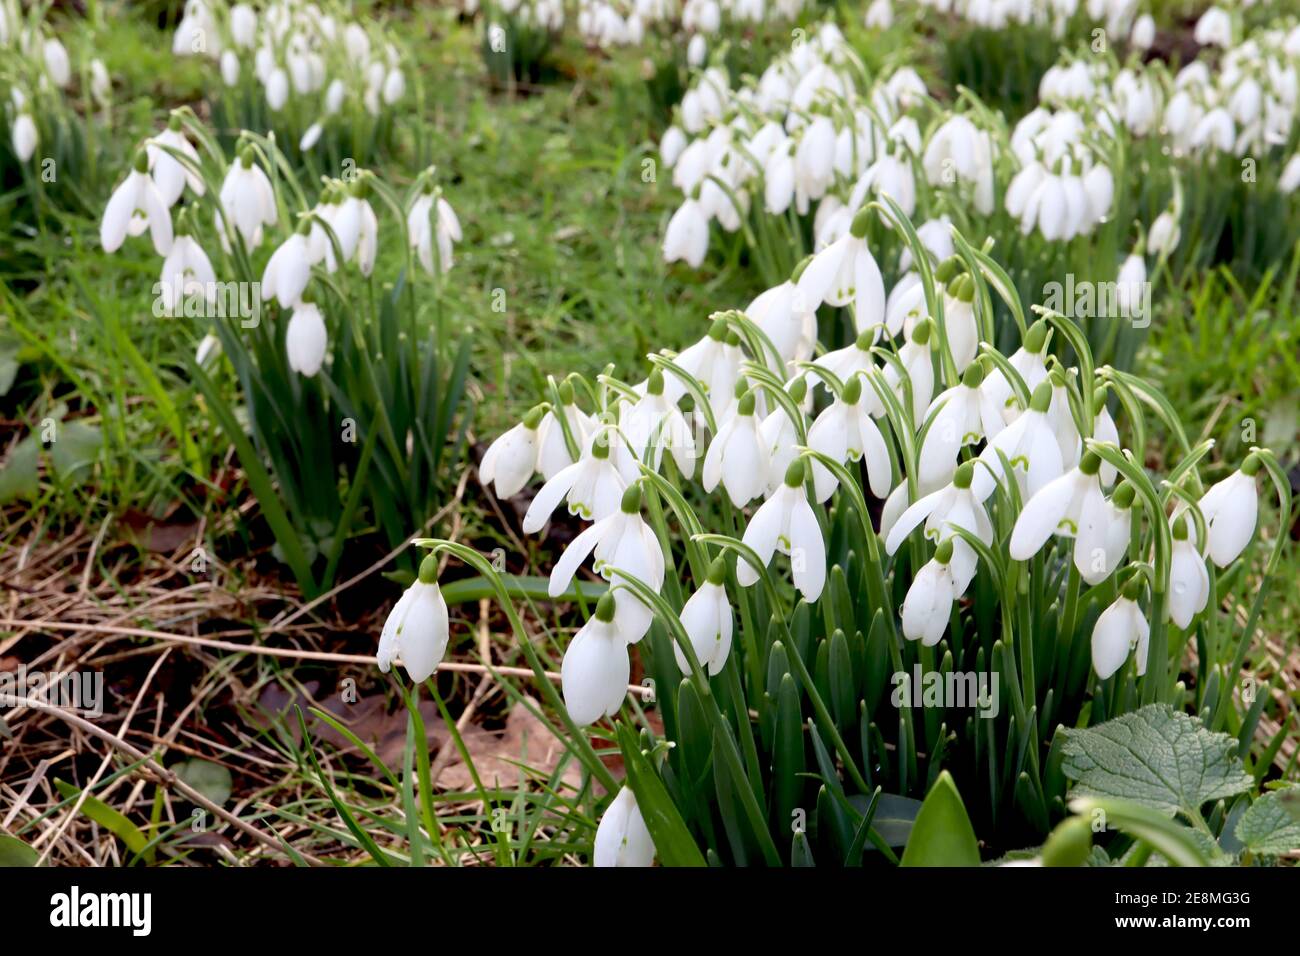 Galanthus elwesii Giant Snowdrop – groupe de fleurs blanches en forme de cloche avec un marquage vert semblable à la moustache, janvier, Angleterre, Royaume-Uni Banque D'Images